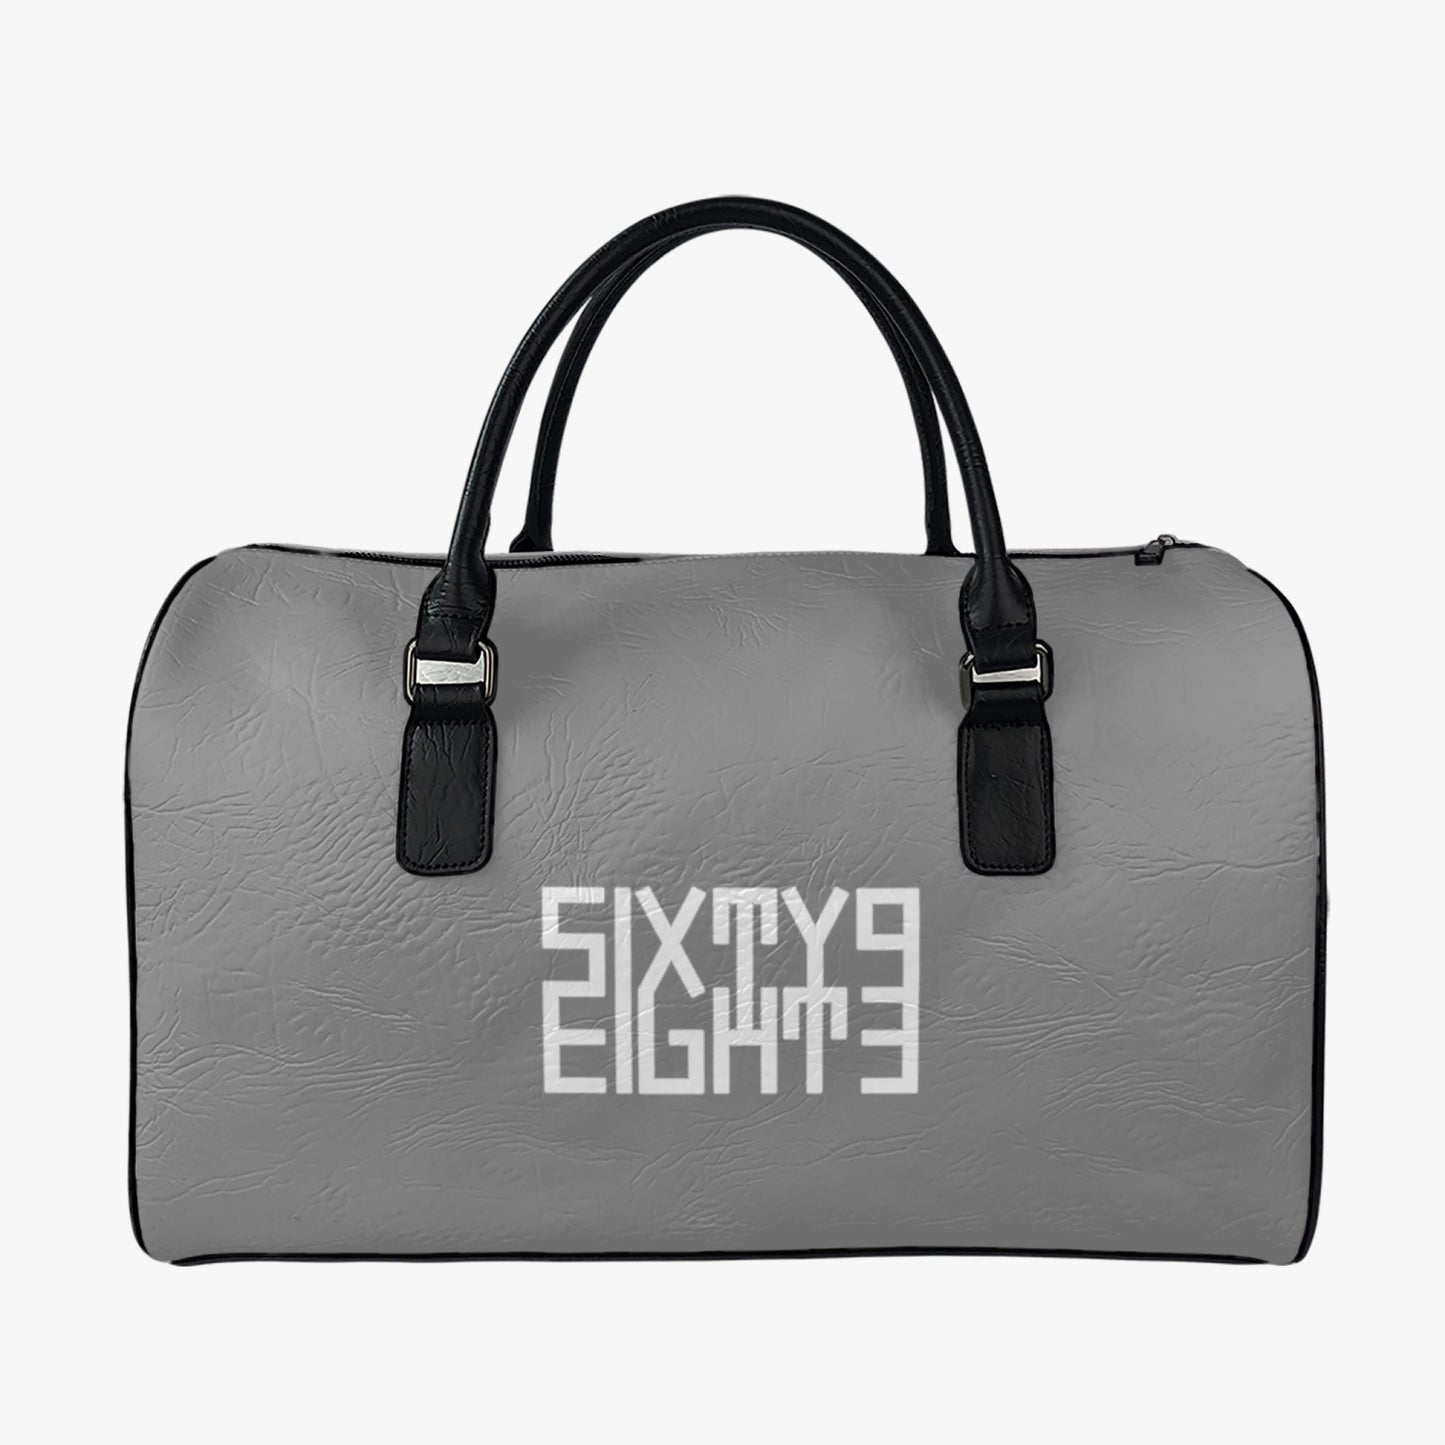 Sixty Eight 93 Logo White Grey Leather Portable Travel Bag